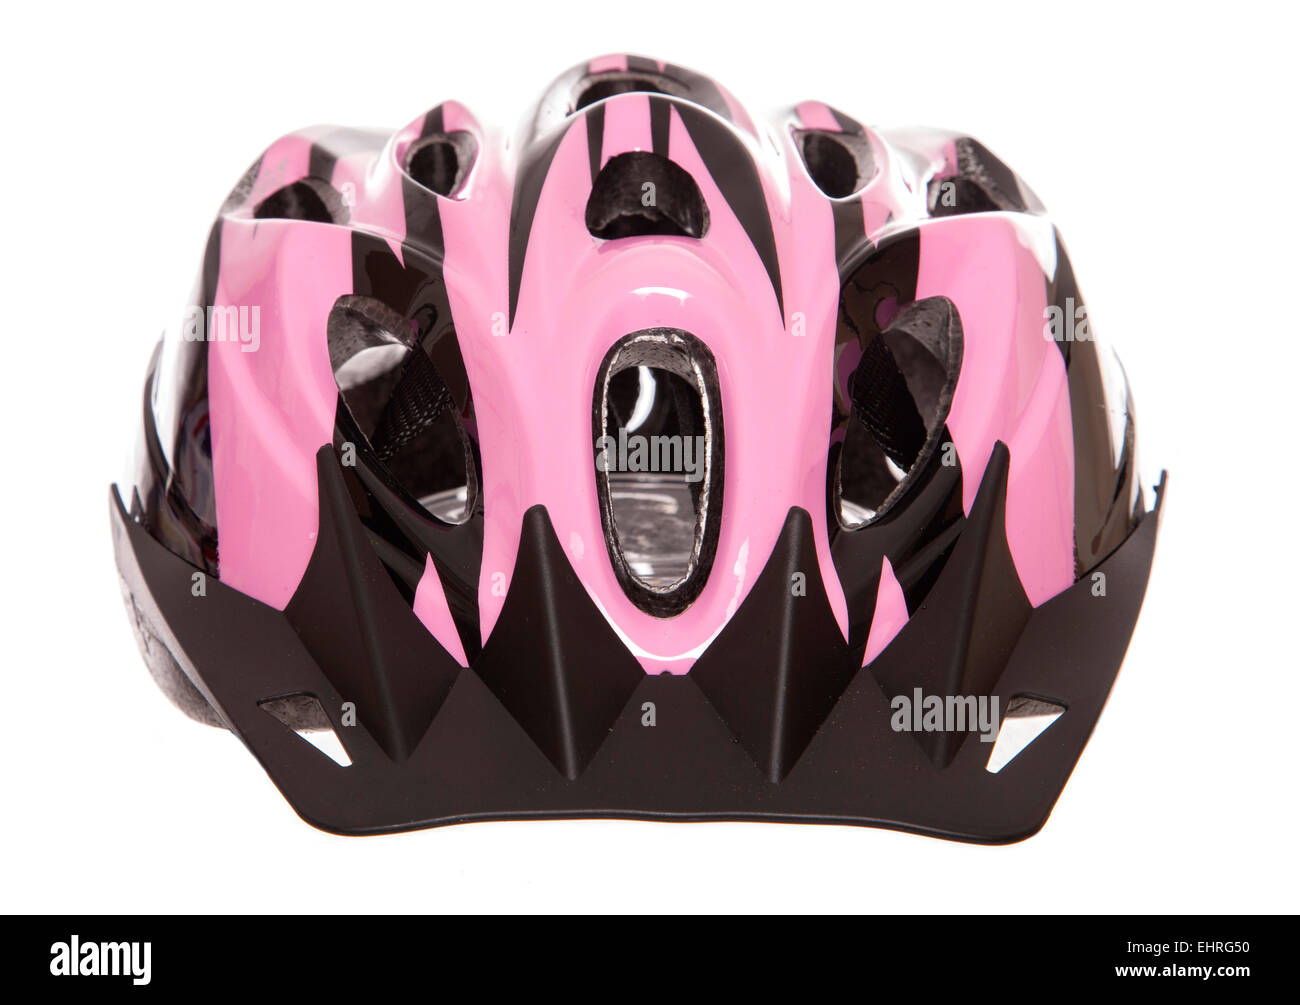 Casque de vélo pour femmes rose Dentelle Banque D'Images